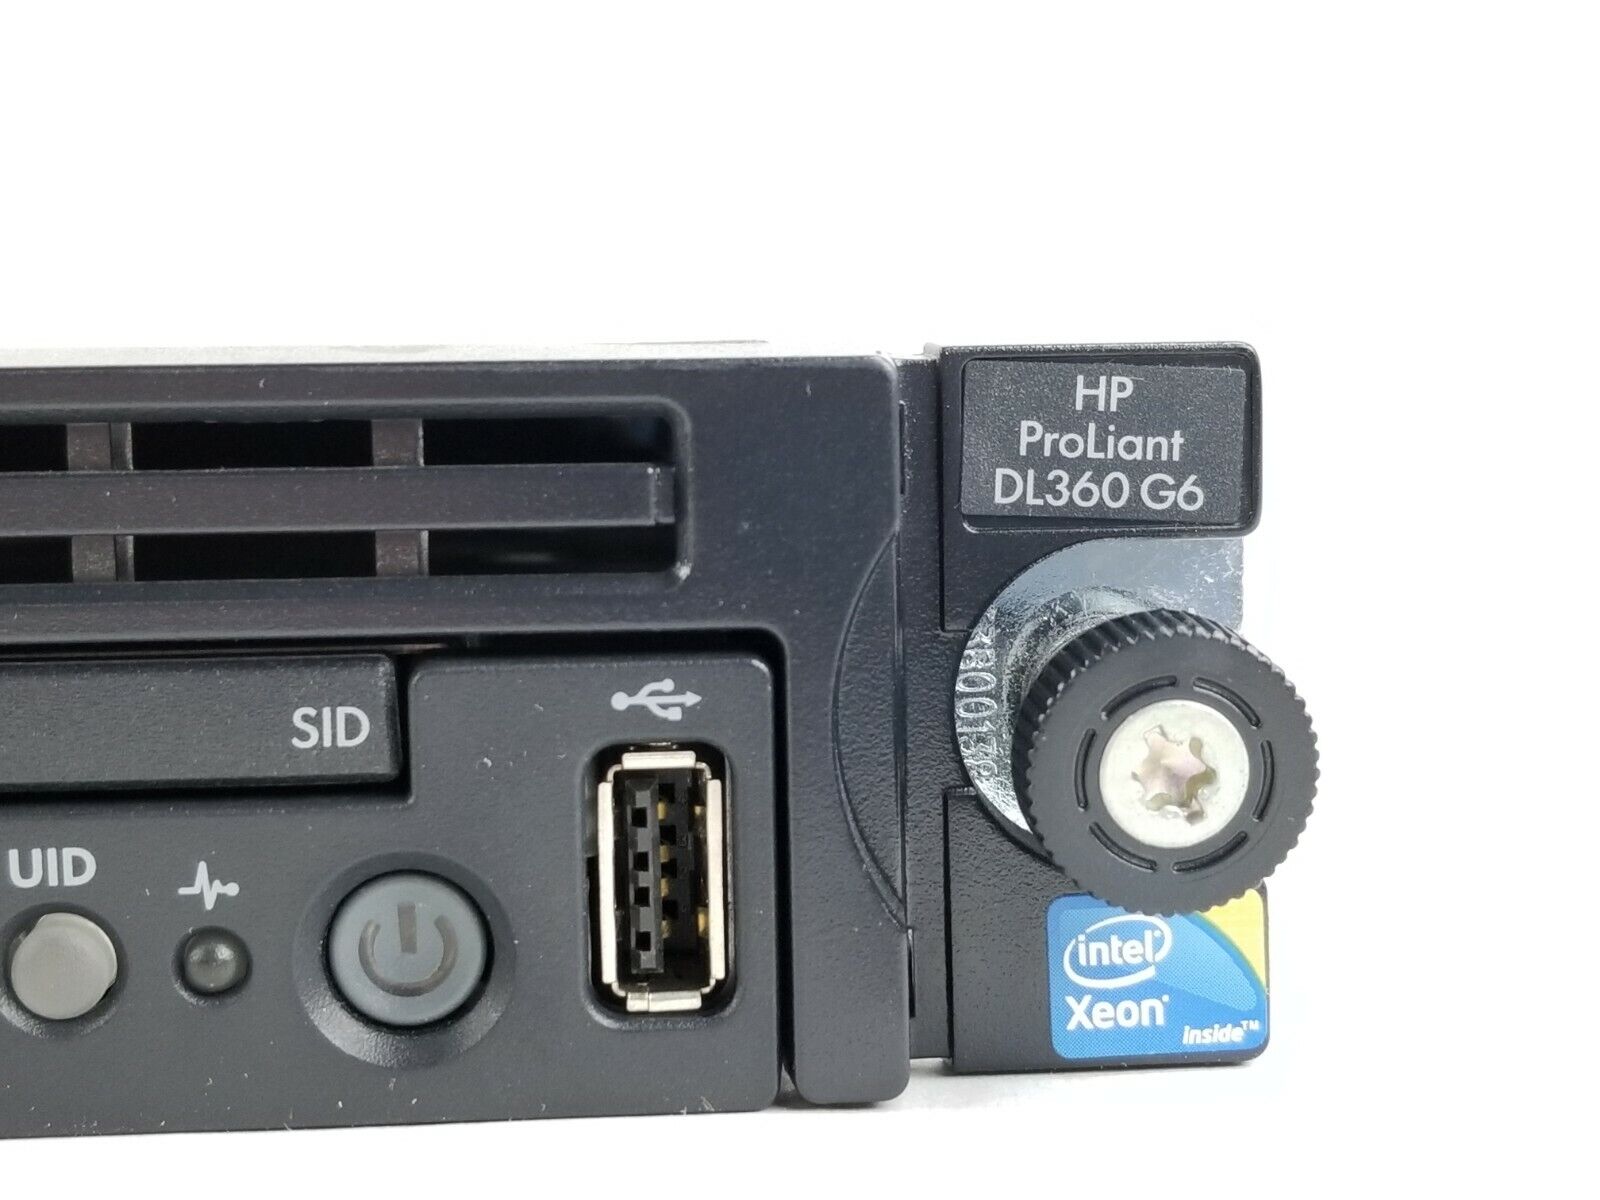 HP Proliant DL360 G6 Intel Xeon E5506 2.13GHz Quad-Core 4GB RAM 1U